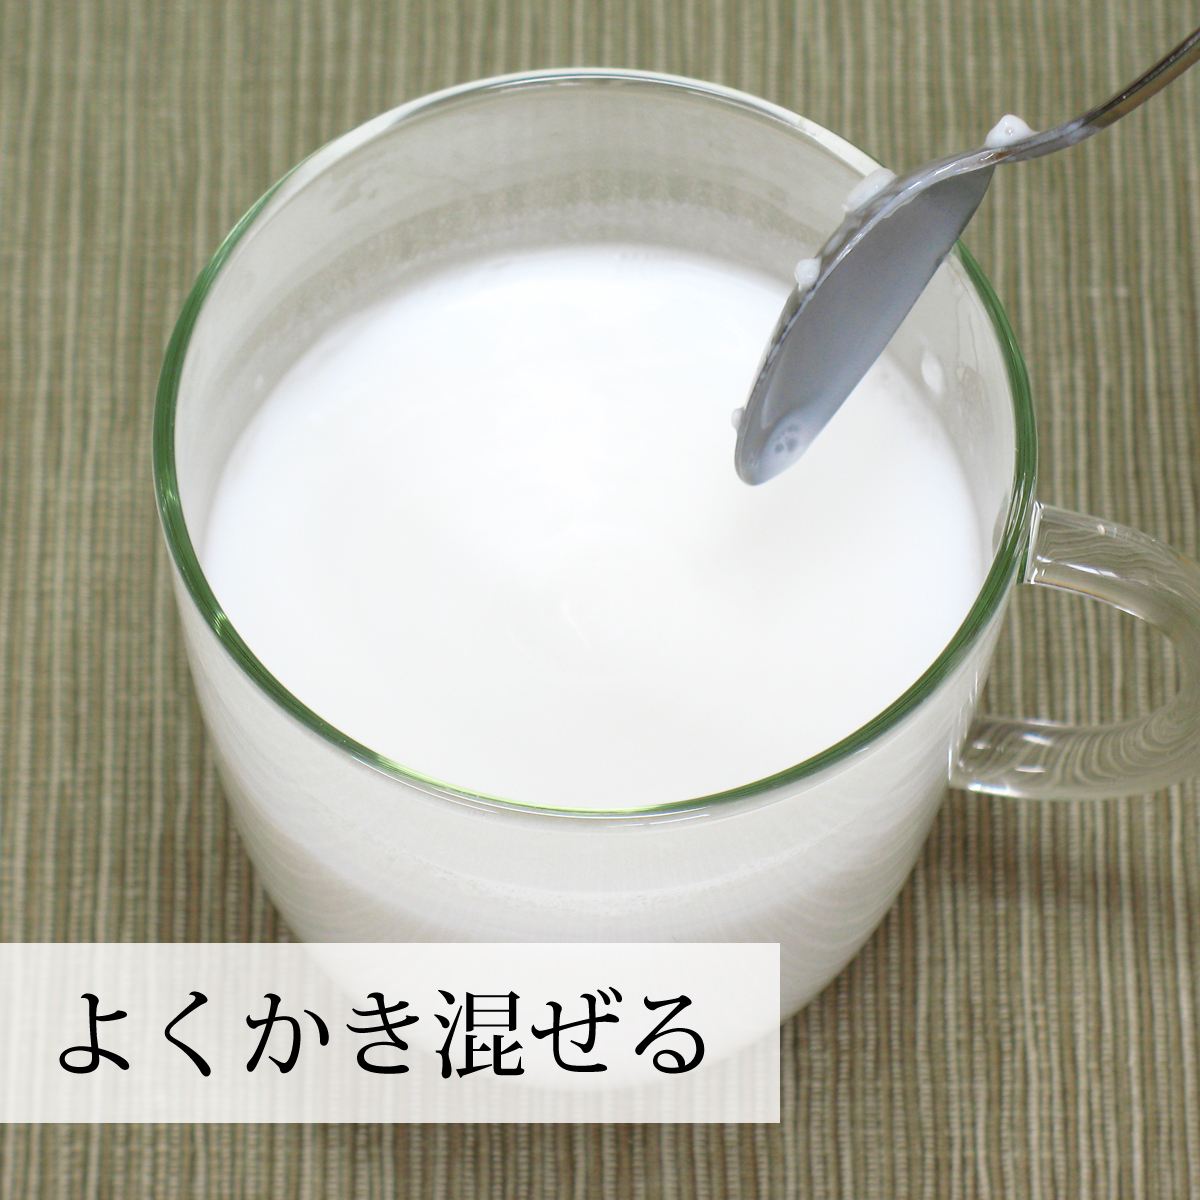 ココナッツミルクパウダー100g×10個 ココナッツオイル 砂糖不使用 送料無料